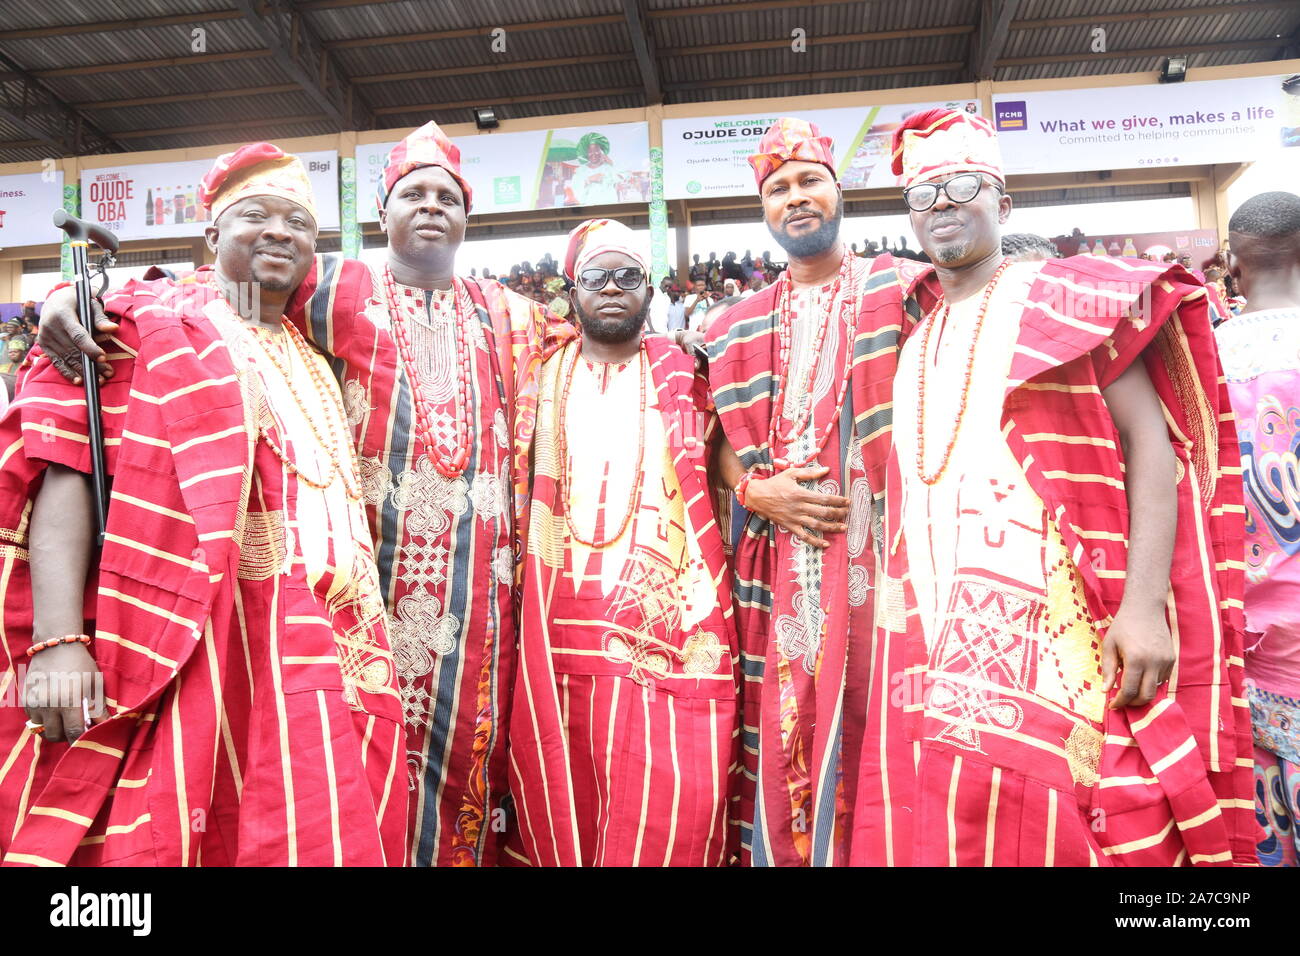 Gli uomini nel loro abbigliamento culturale durante il Festival annuale di Ojude Oba, Ijebu Ode, Ogun state, Nigeria. Foto Stock